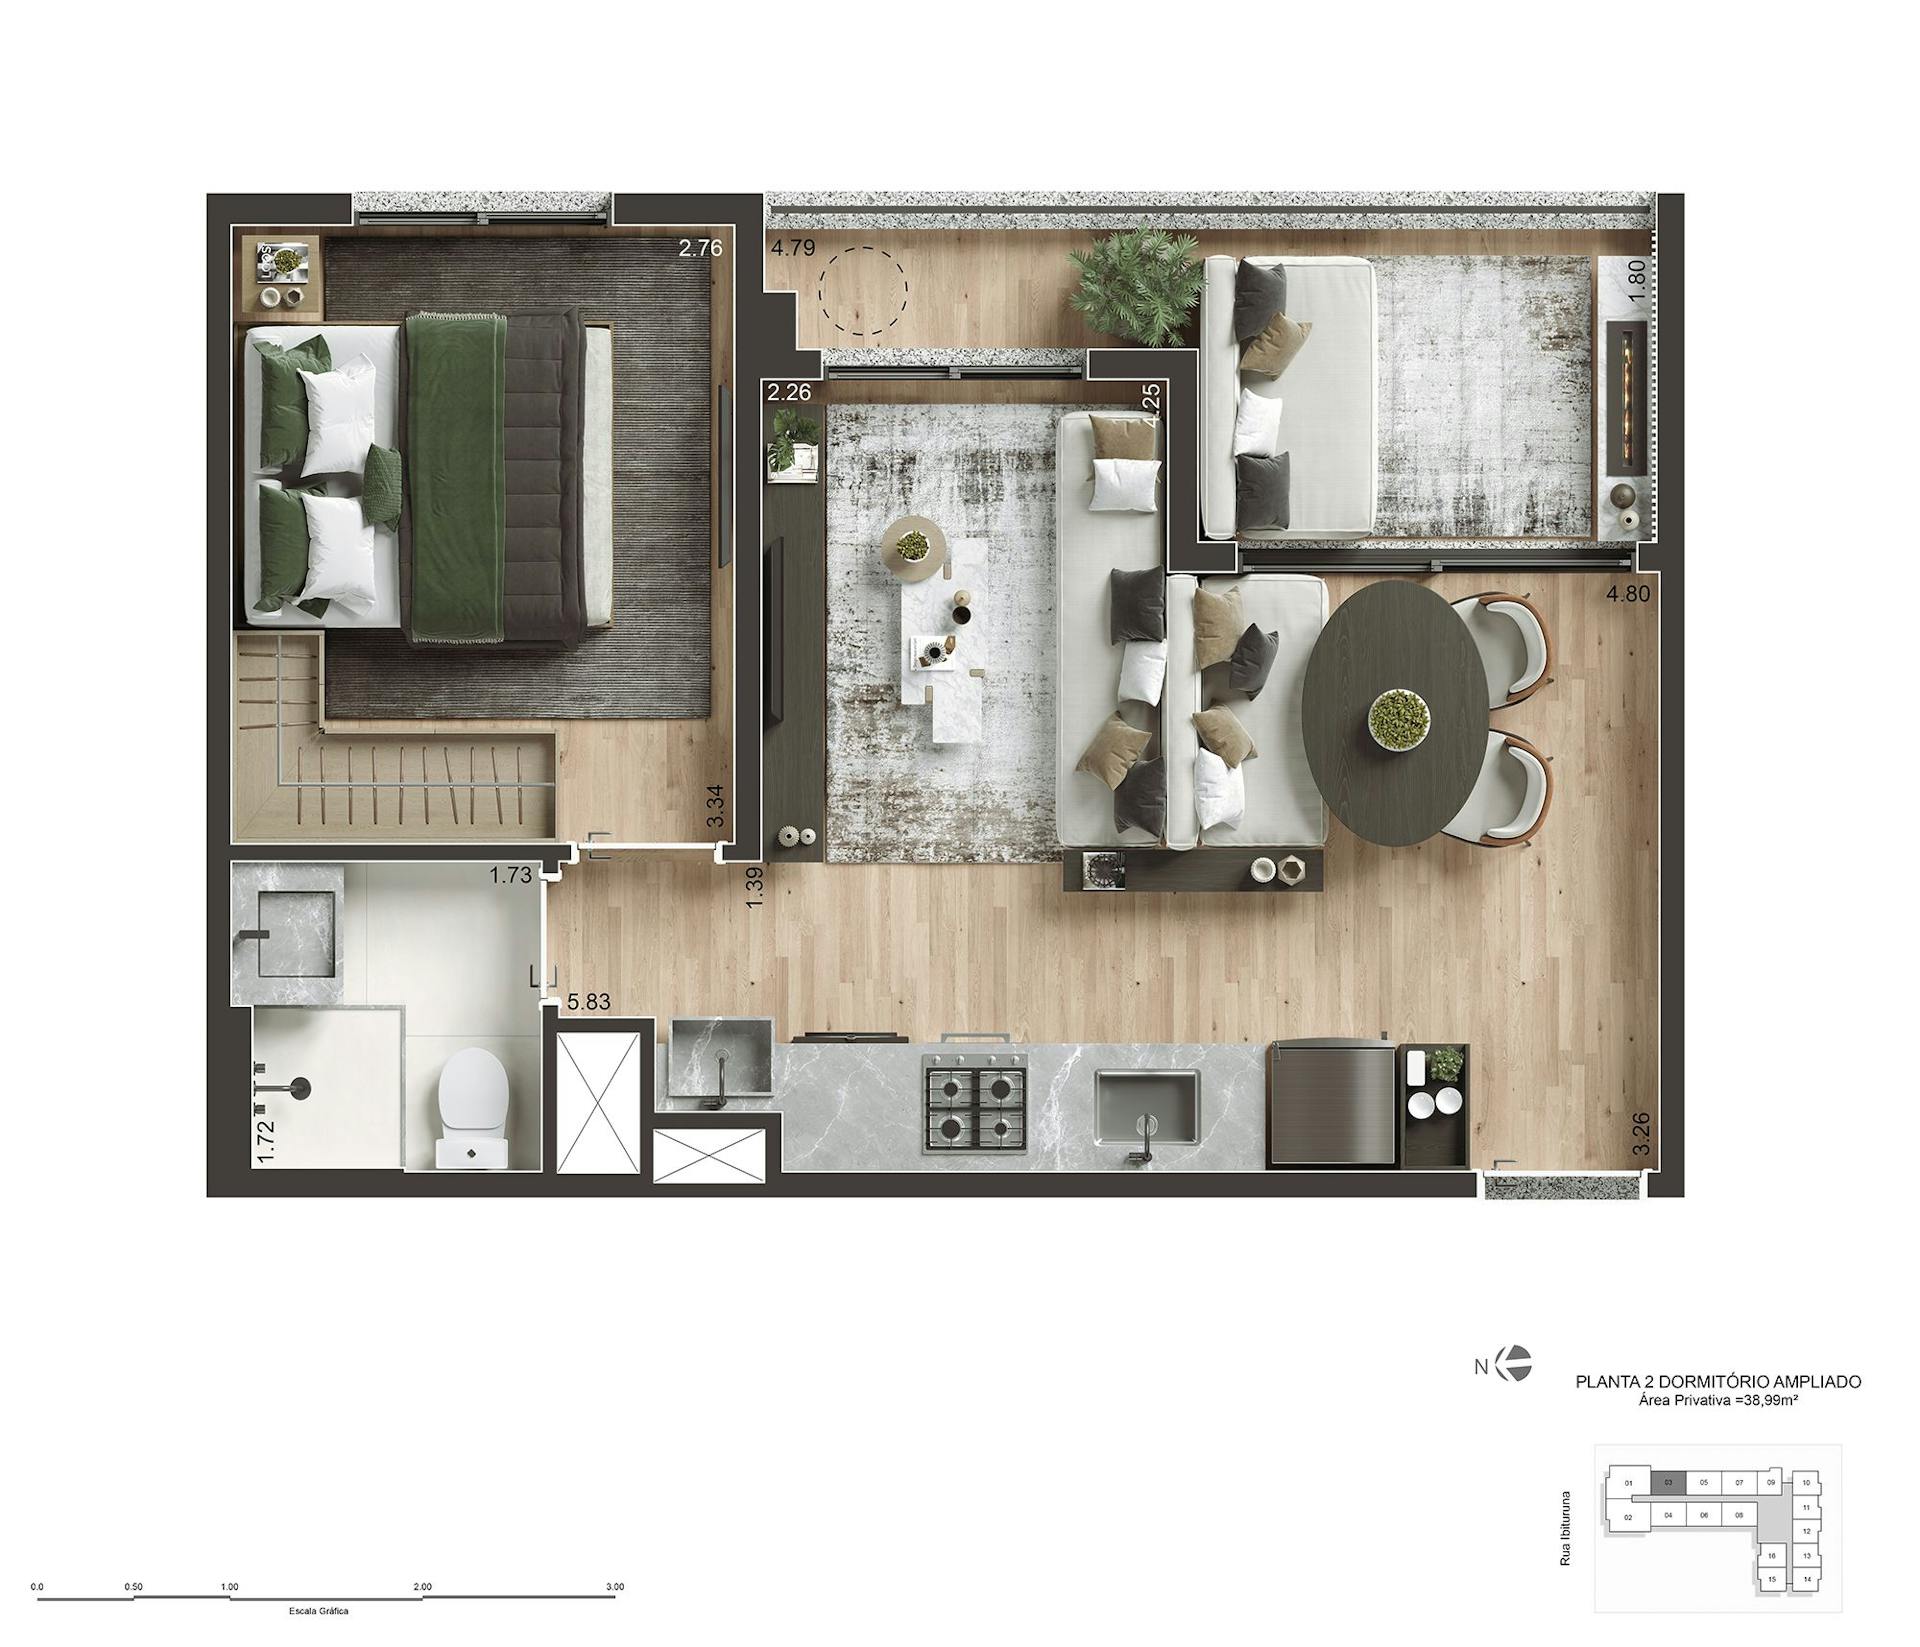 Perspectiva artística do apartamento de 39m² com 2 dorms e living ampliado - Final 03